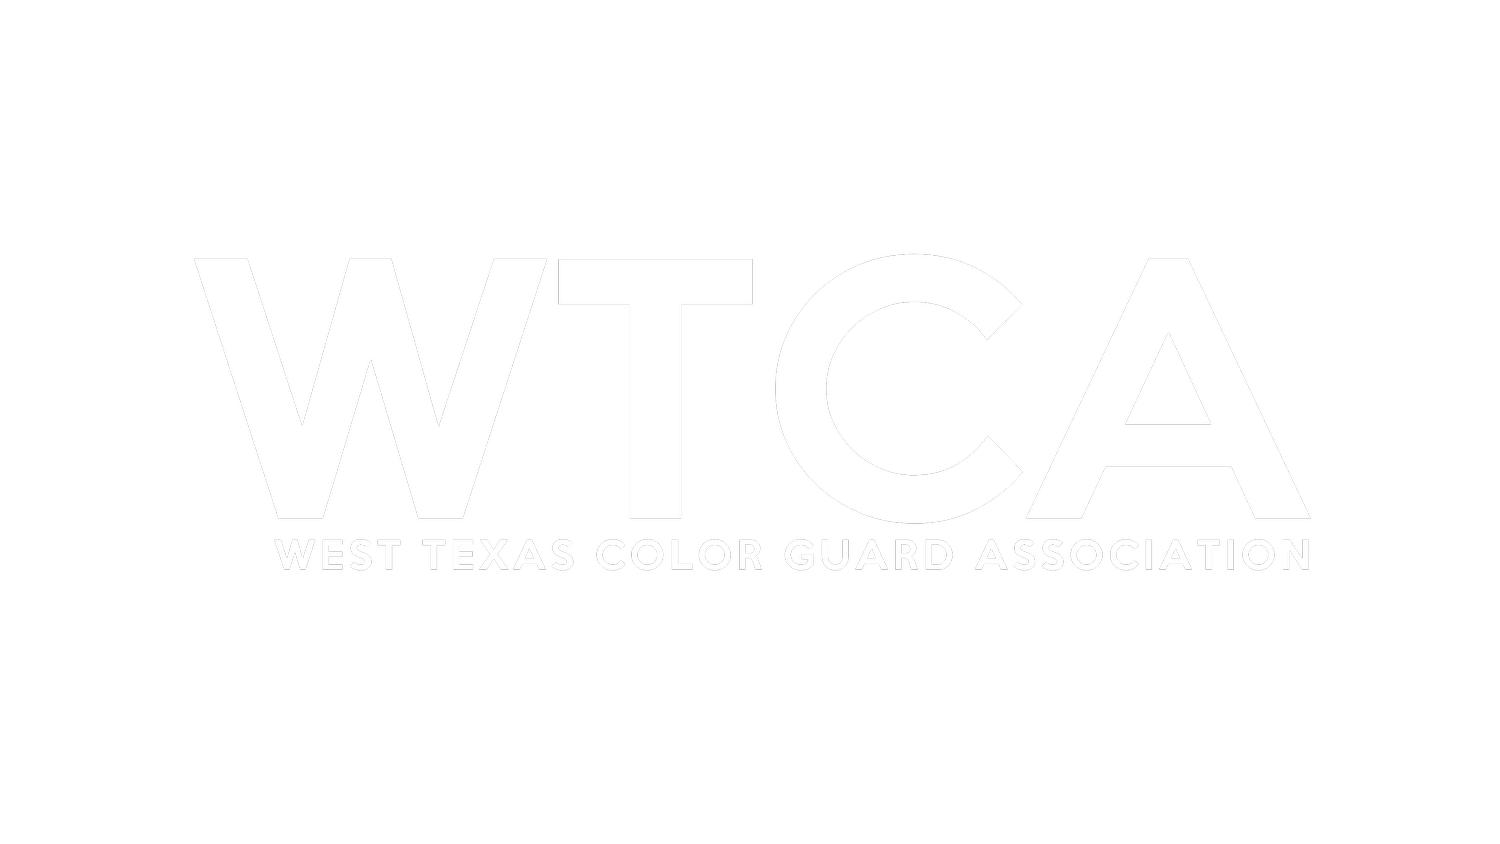 West Texas Color Guard Association